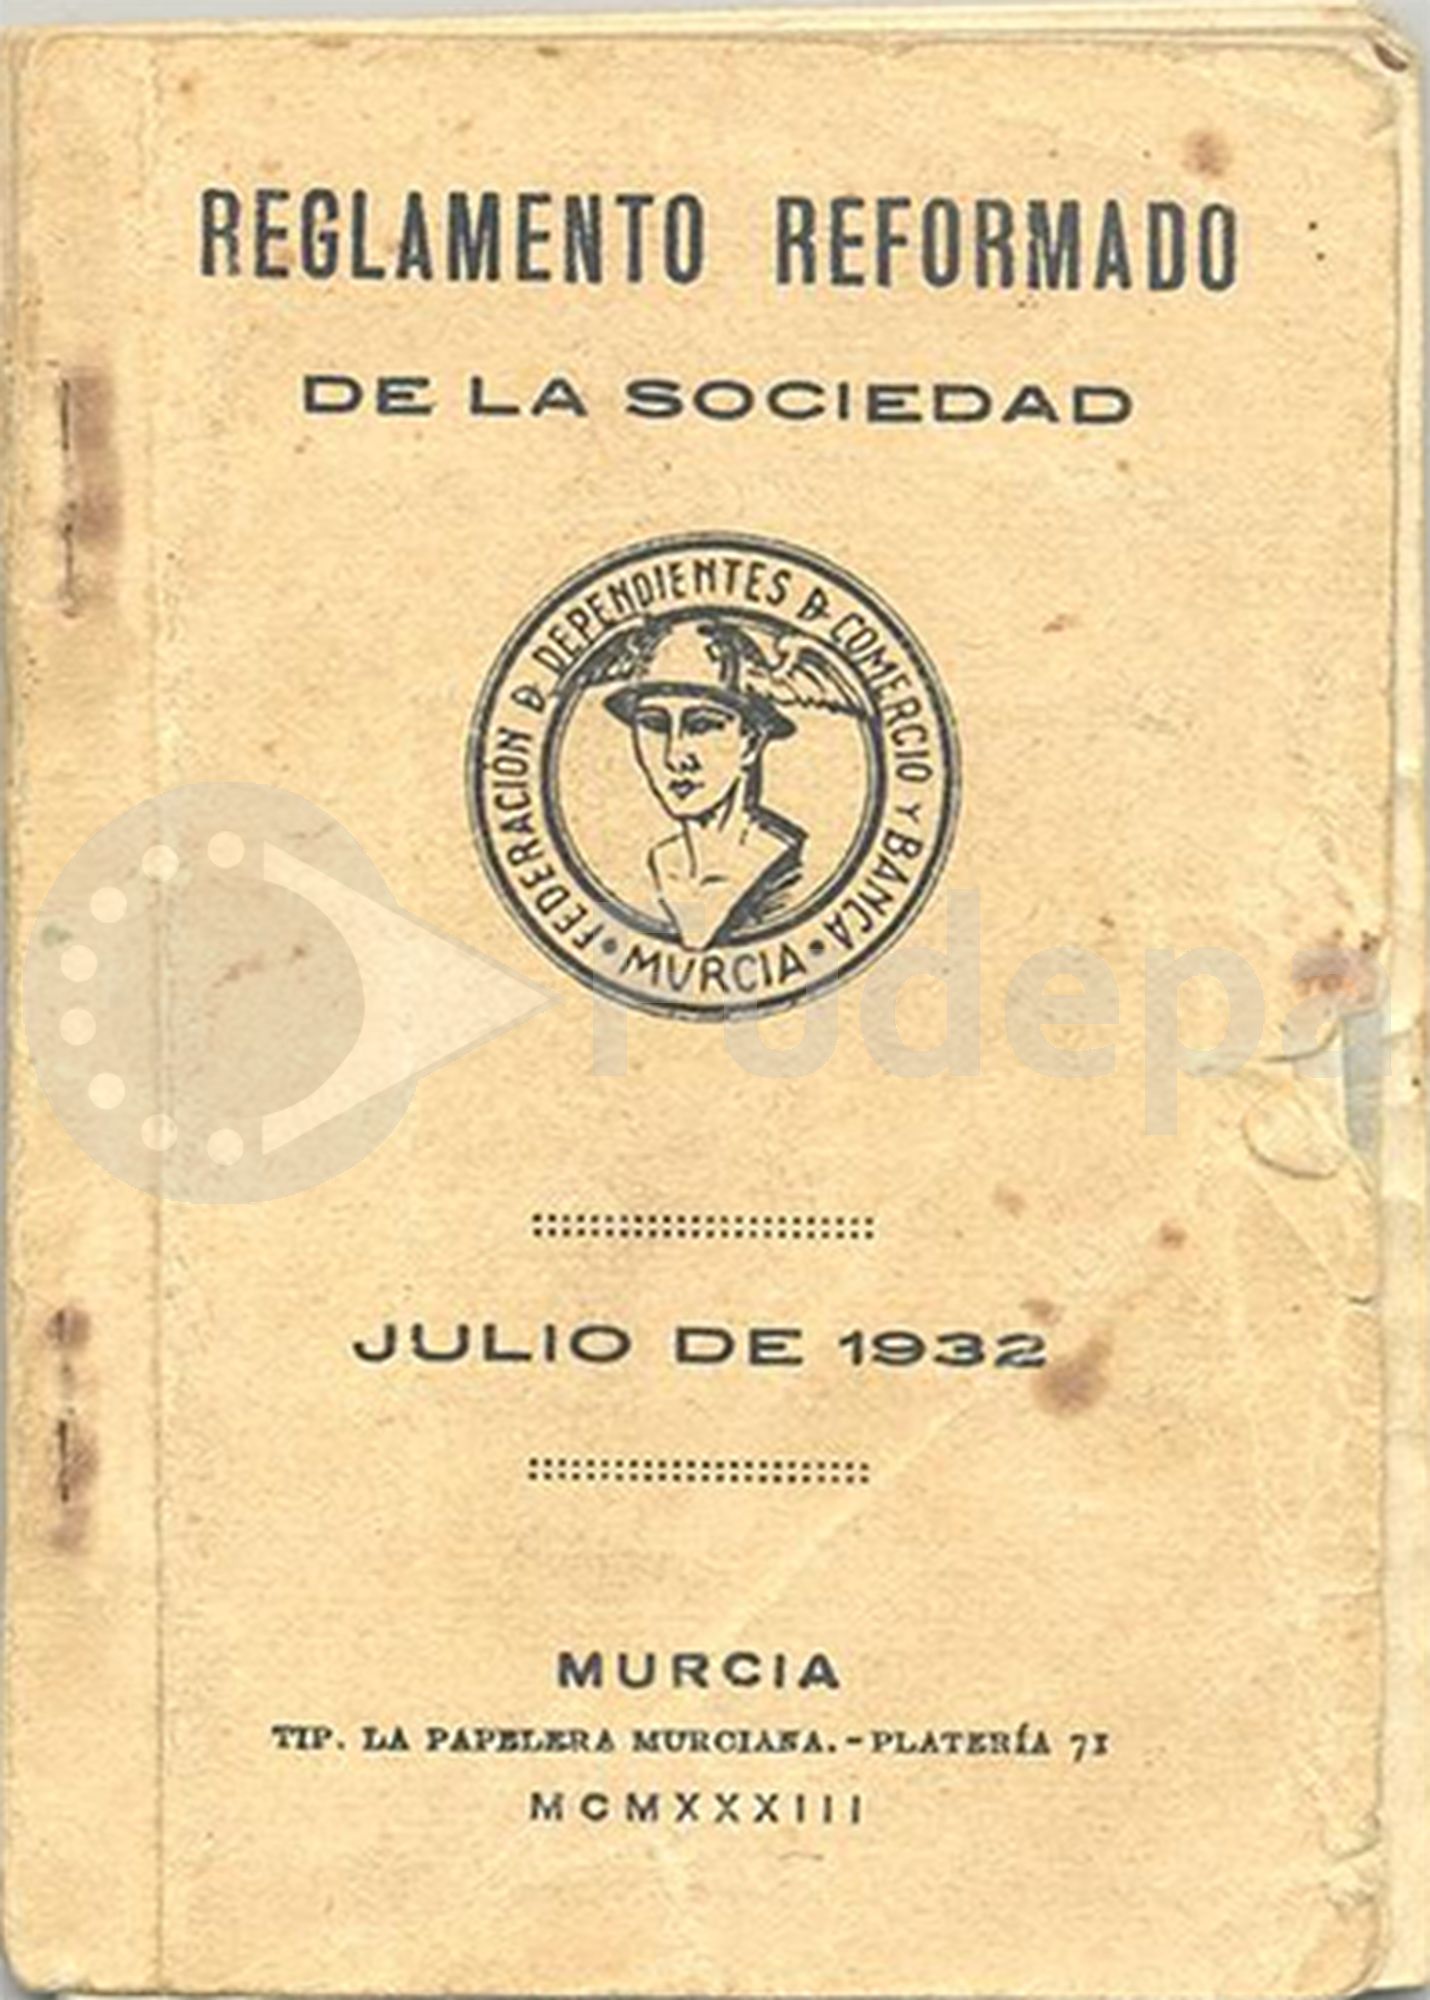 Reglamento Reformado de la Sociedad de Dependientes de Comercio y Banca Instructiva de Murcia. Julio de 1932. Donado por Francisco Ruiz Chacón. FUDEPA. AHUGT-A: C_ 12876/24